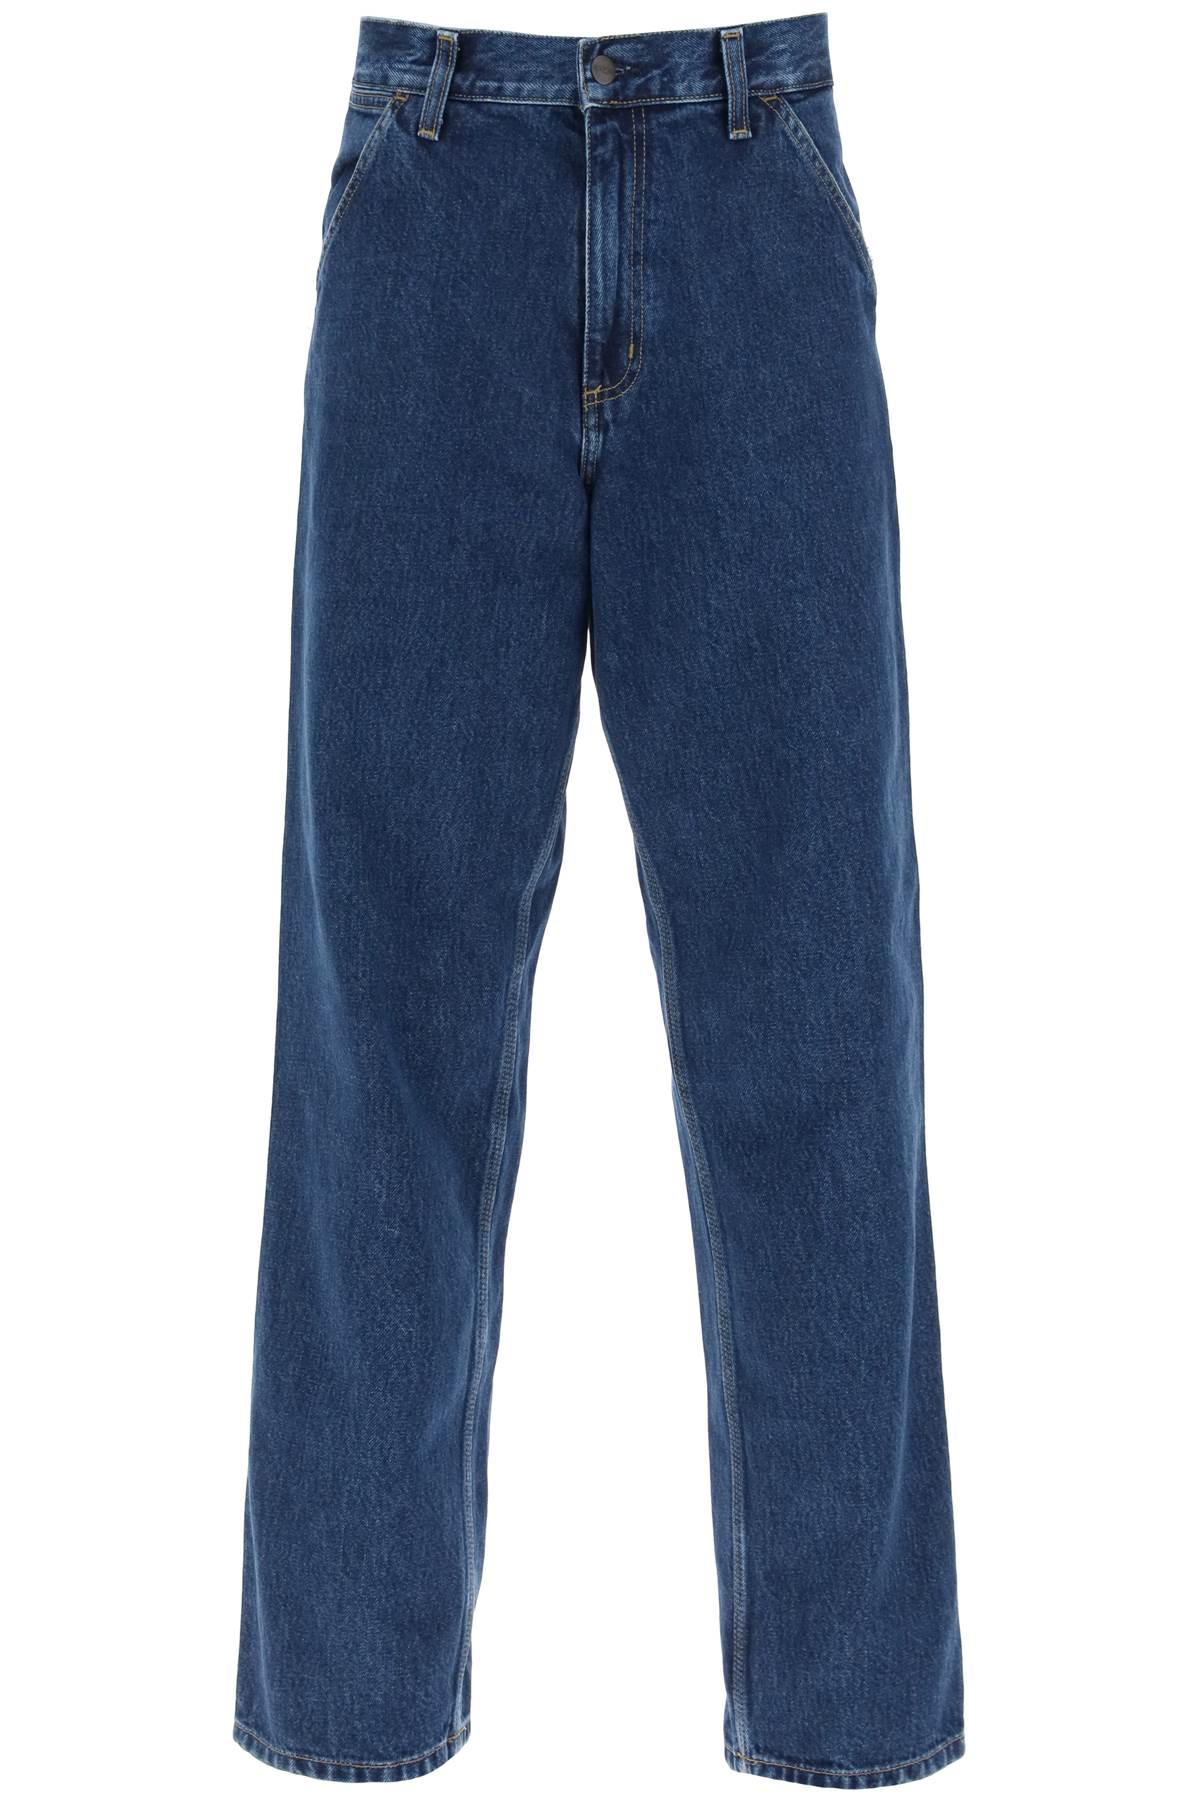 Carhartt wip 'smith' cargo jeans-0